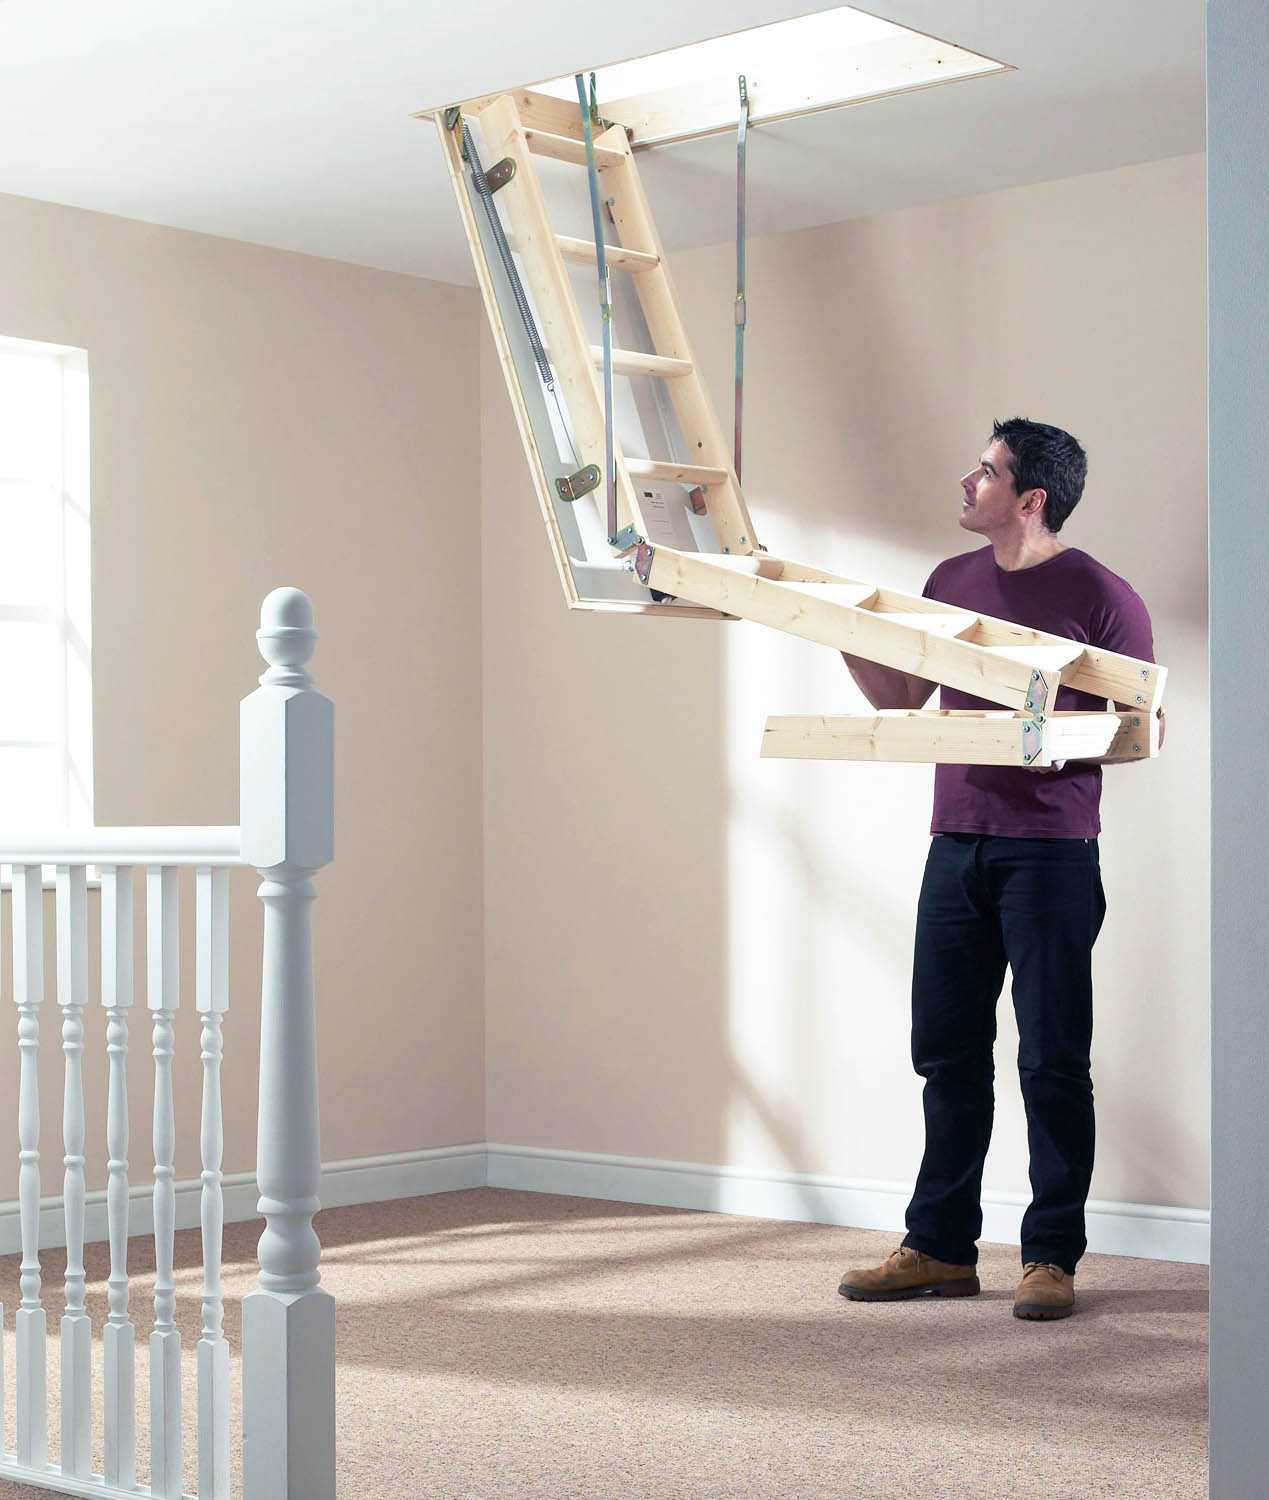 Чердачная лестница для дома, особенности моделей с фото